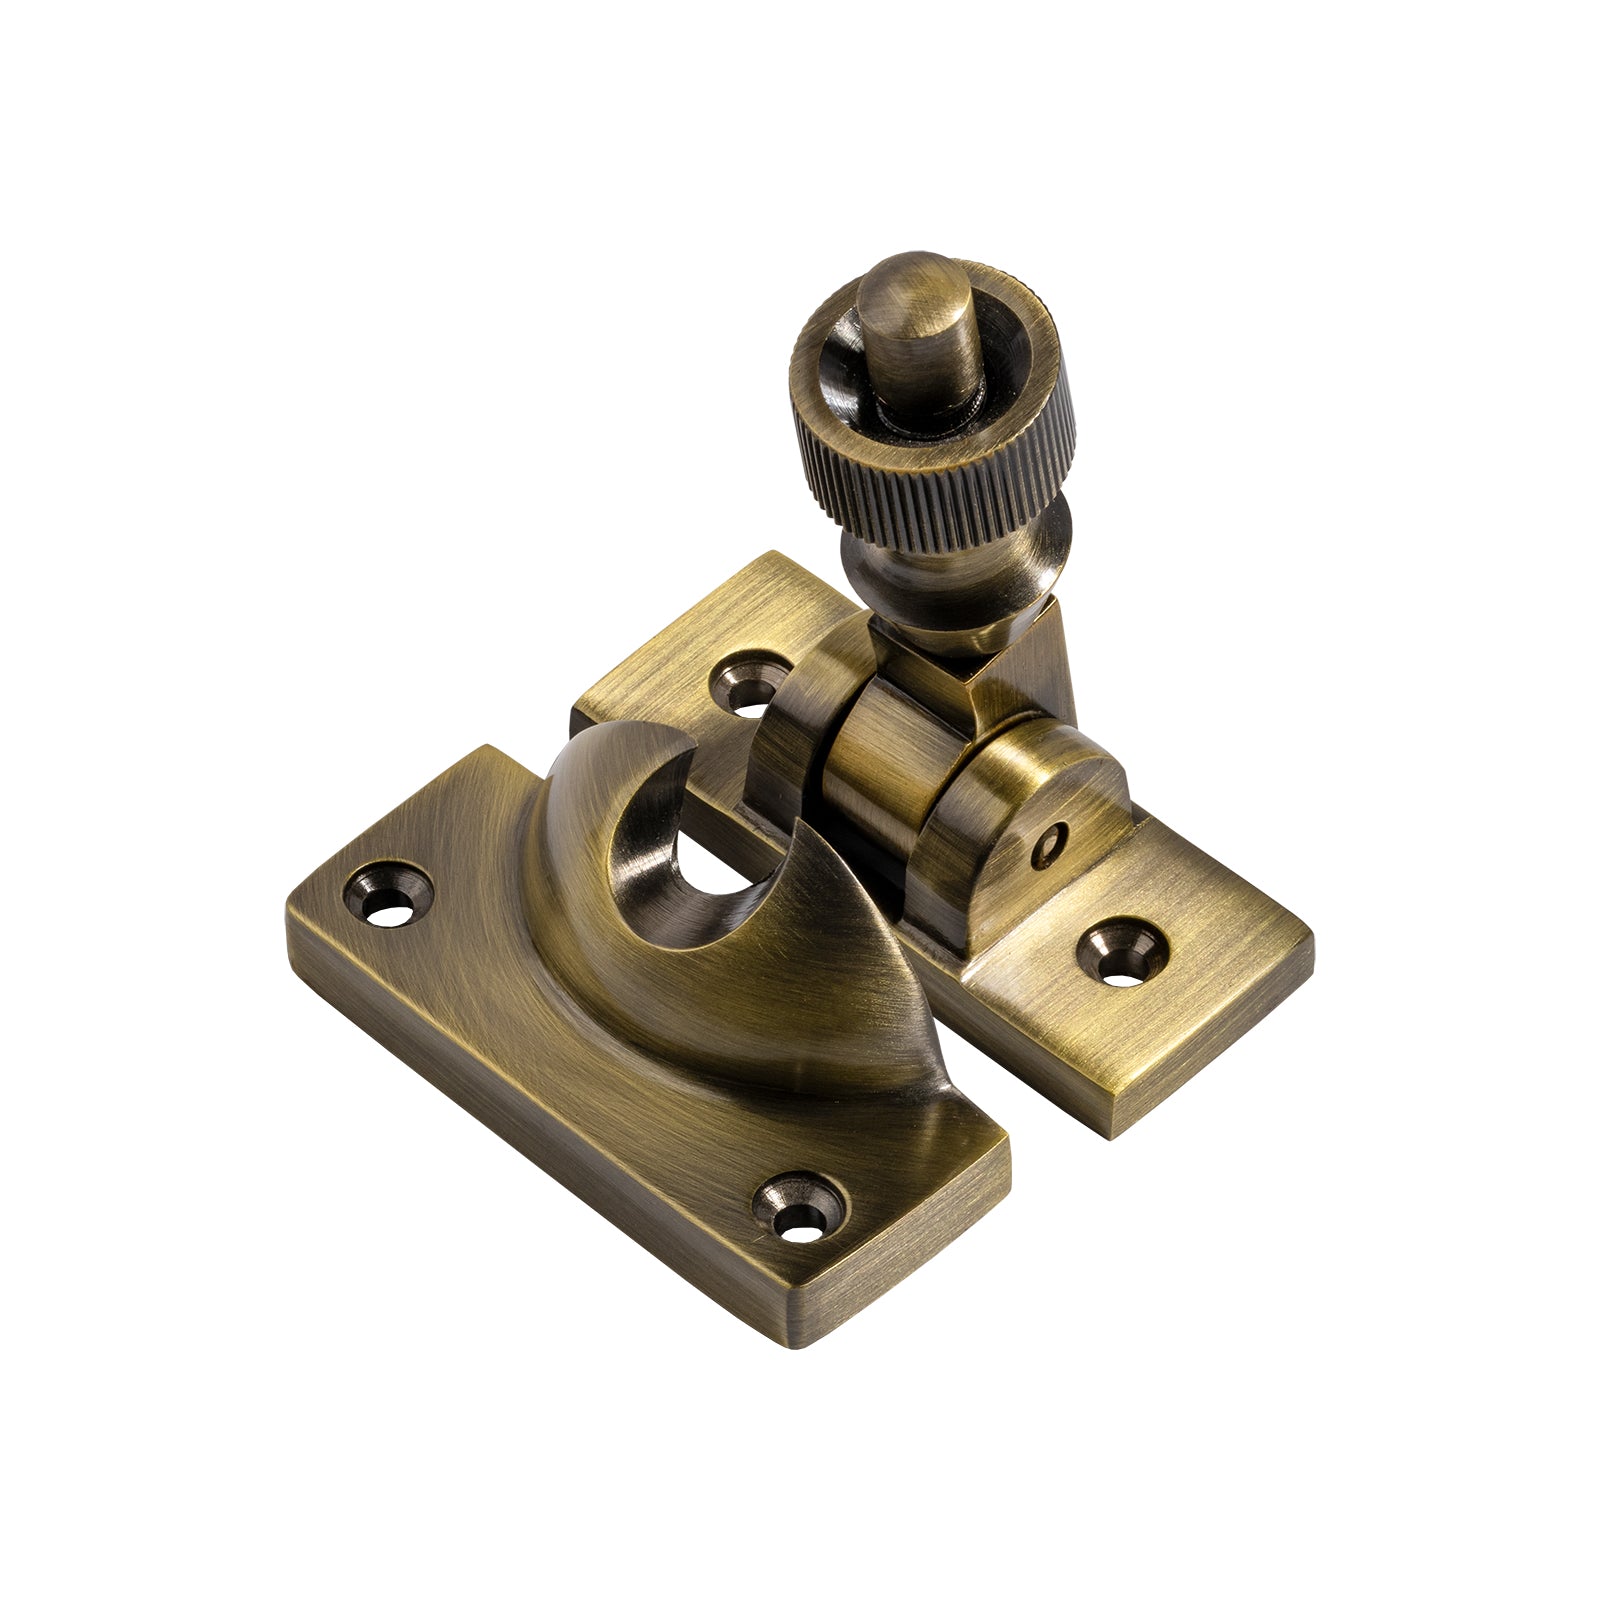 aged brass brighton sash fastener lock SHOW